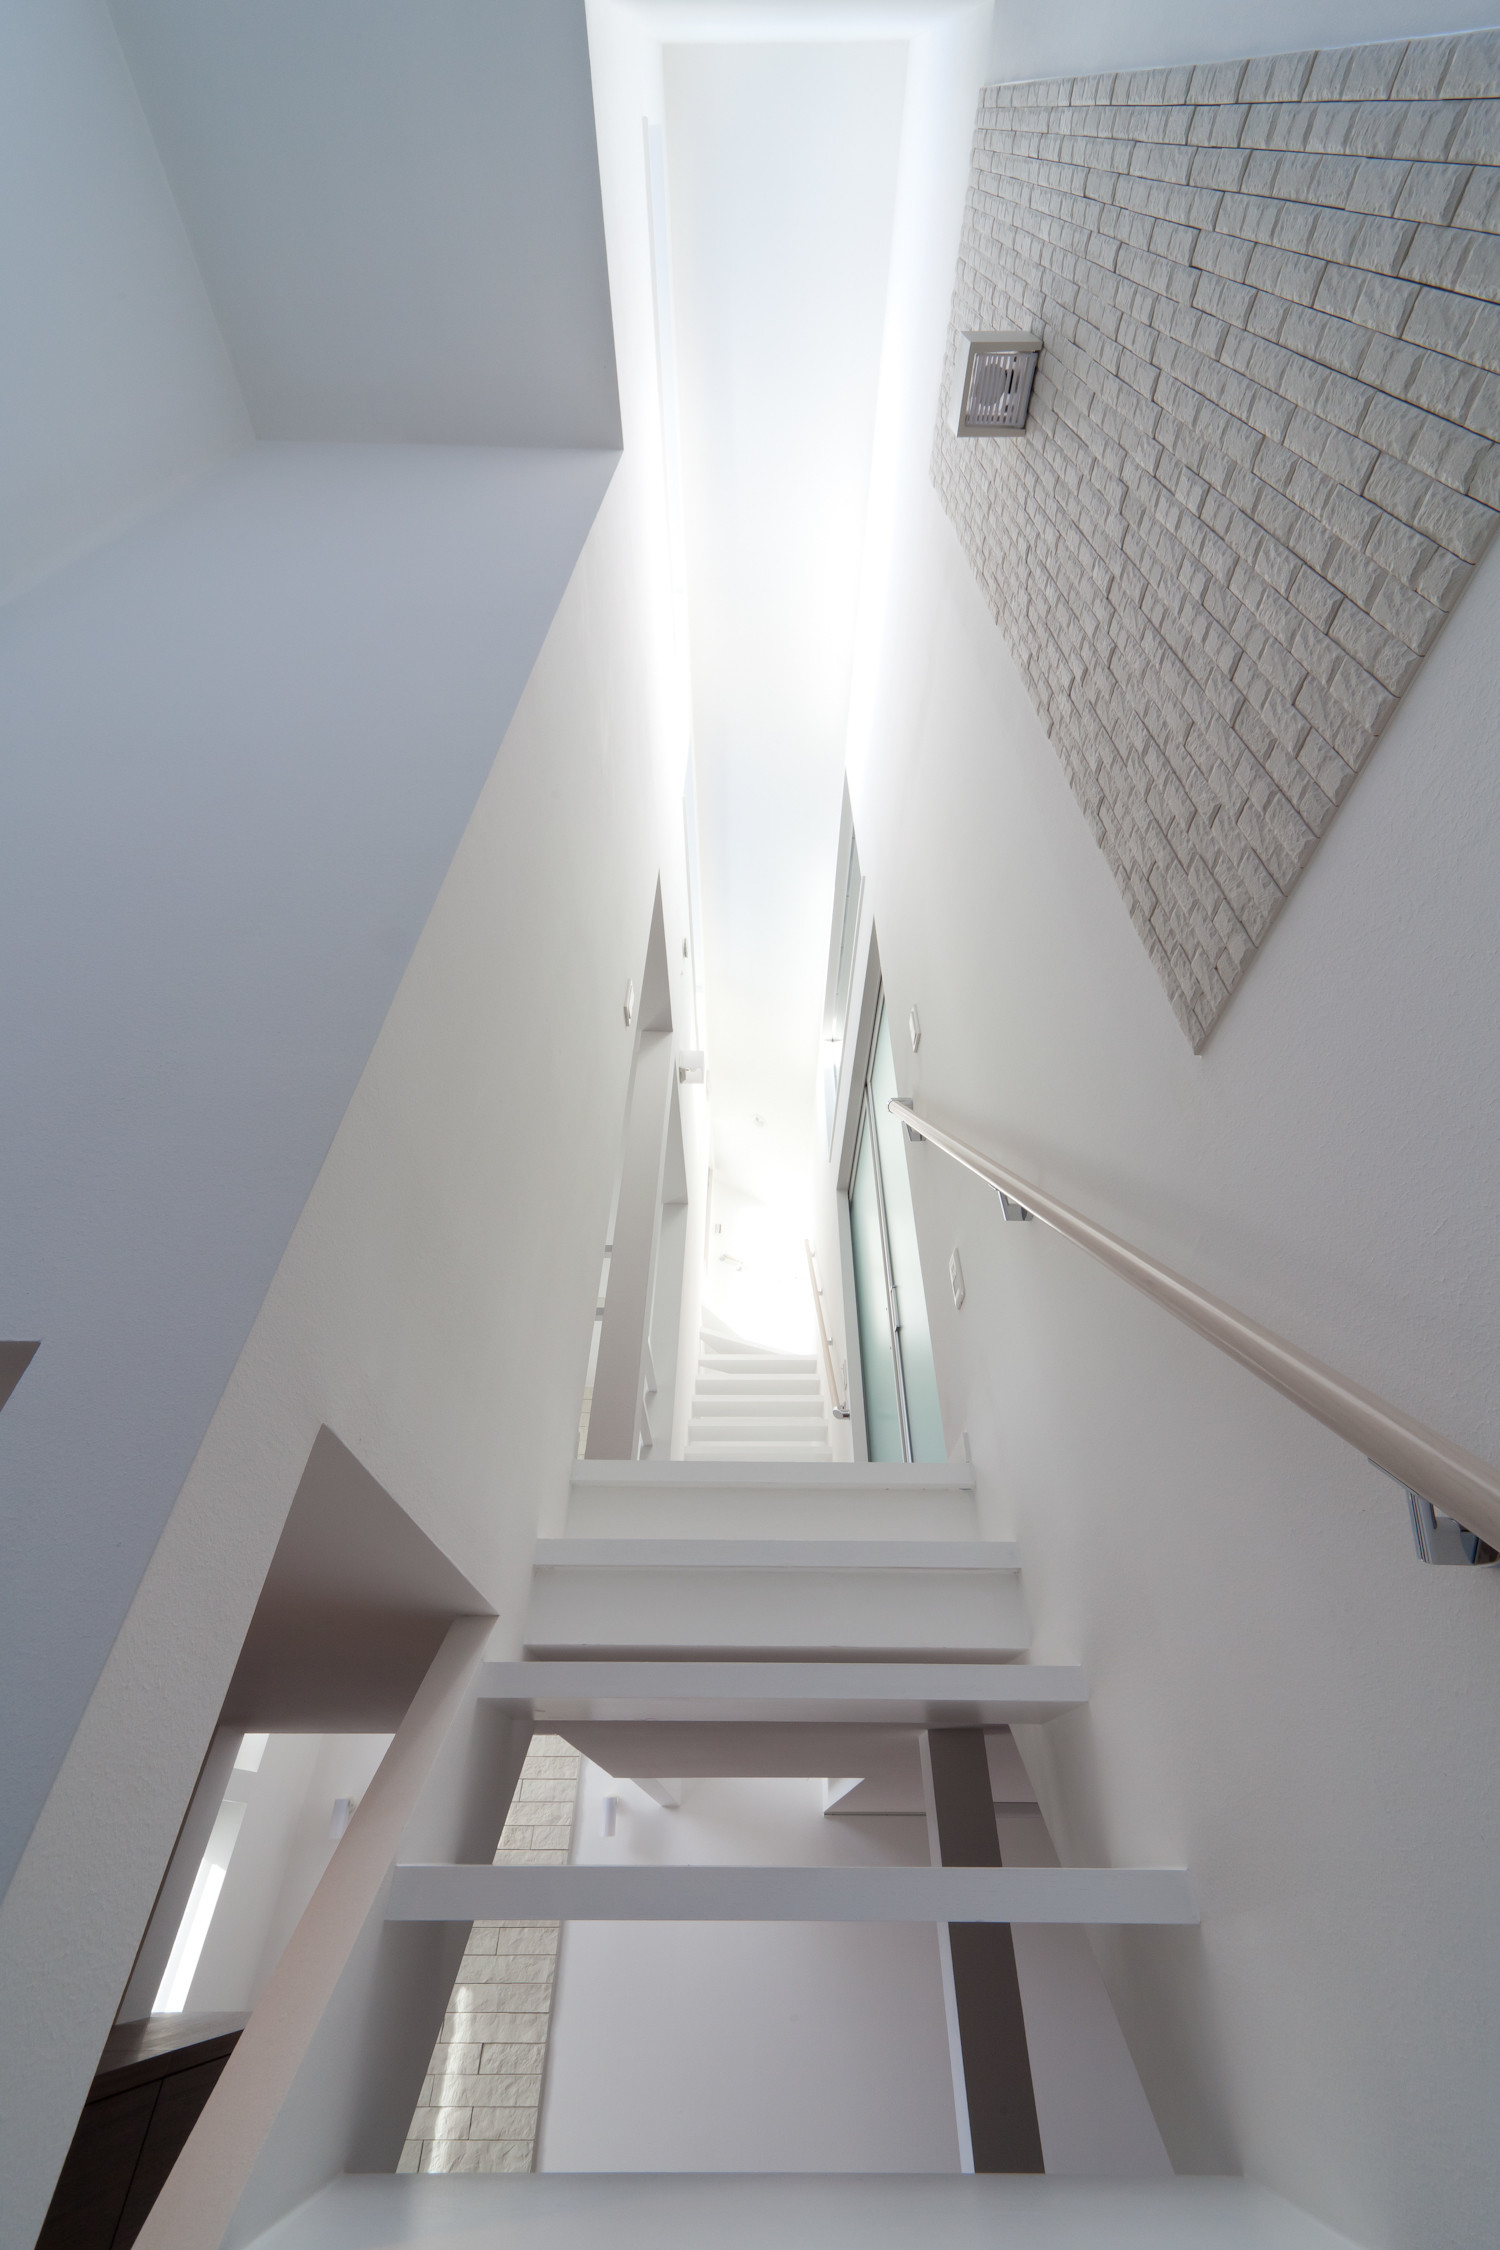 このお宅の自慢通称「光の階段」です。 | ひかり階段のある家